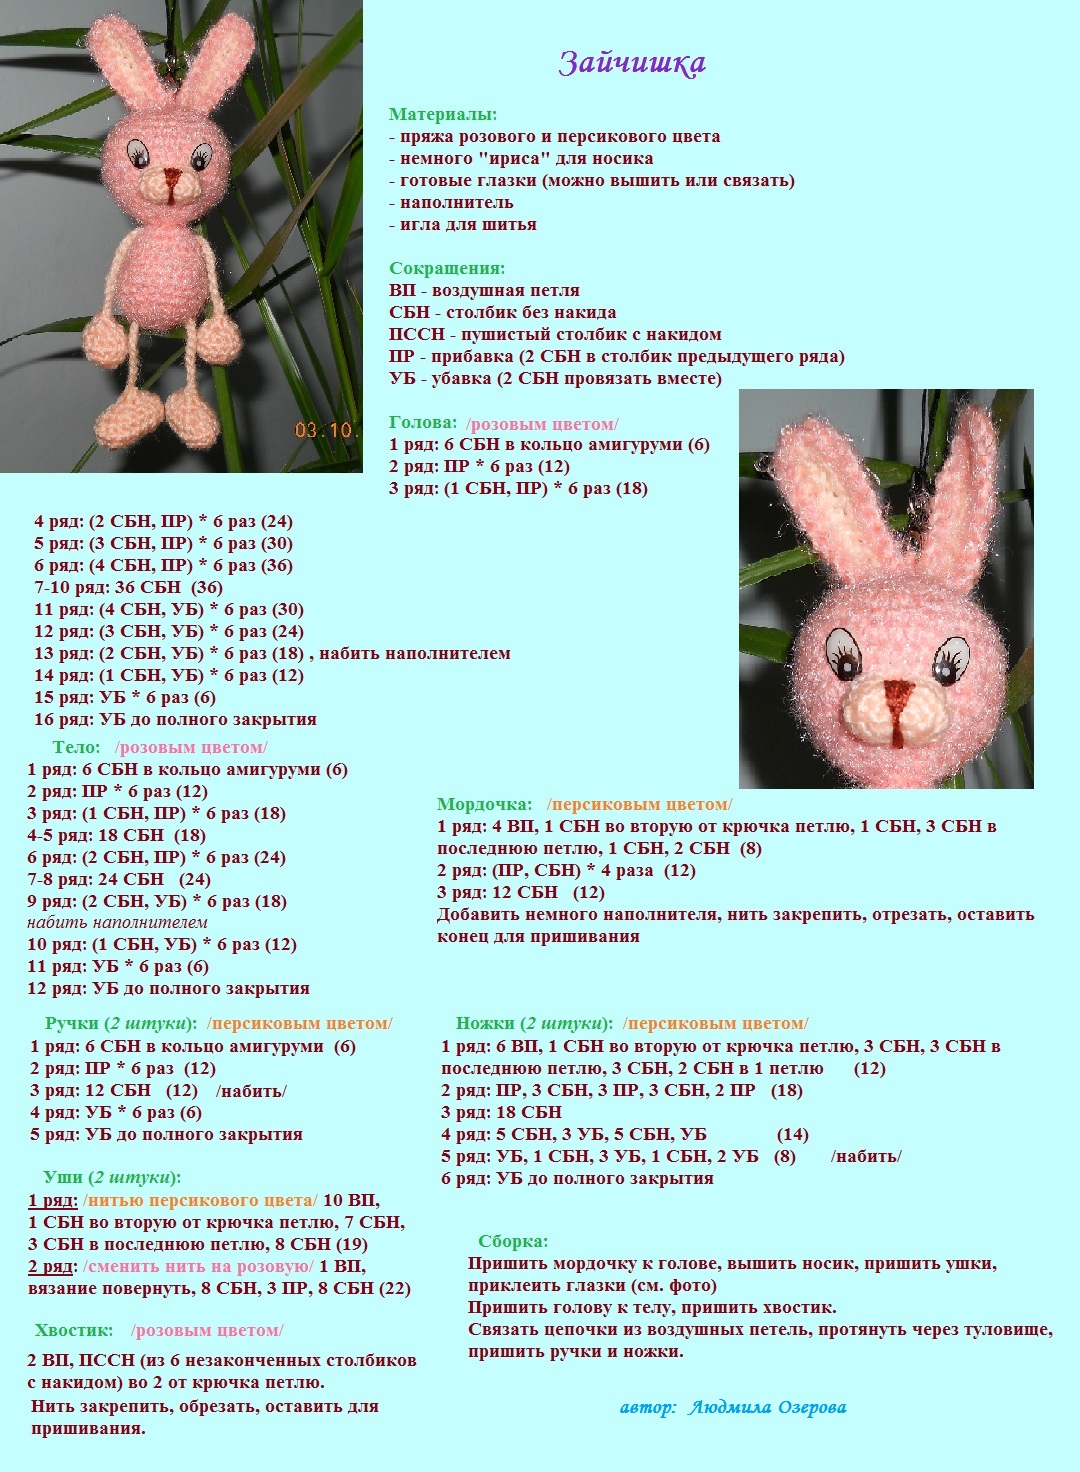 Зайцы вязаные крючком описание. Амигуруми для начинающих схемы с описанием зайчик. Схема головы зайца амигуруми. Вязаный кролик со схемами и описанием. Заяц амигуруми схема и описание.